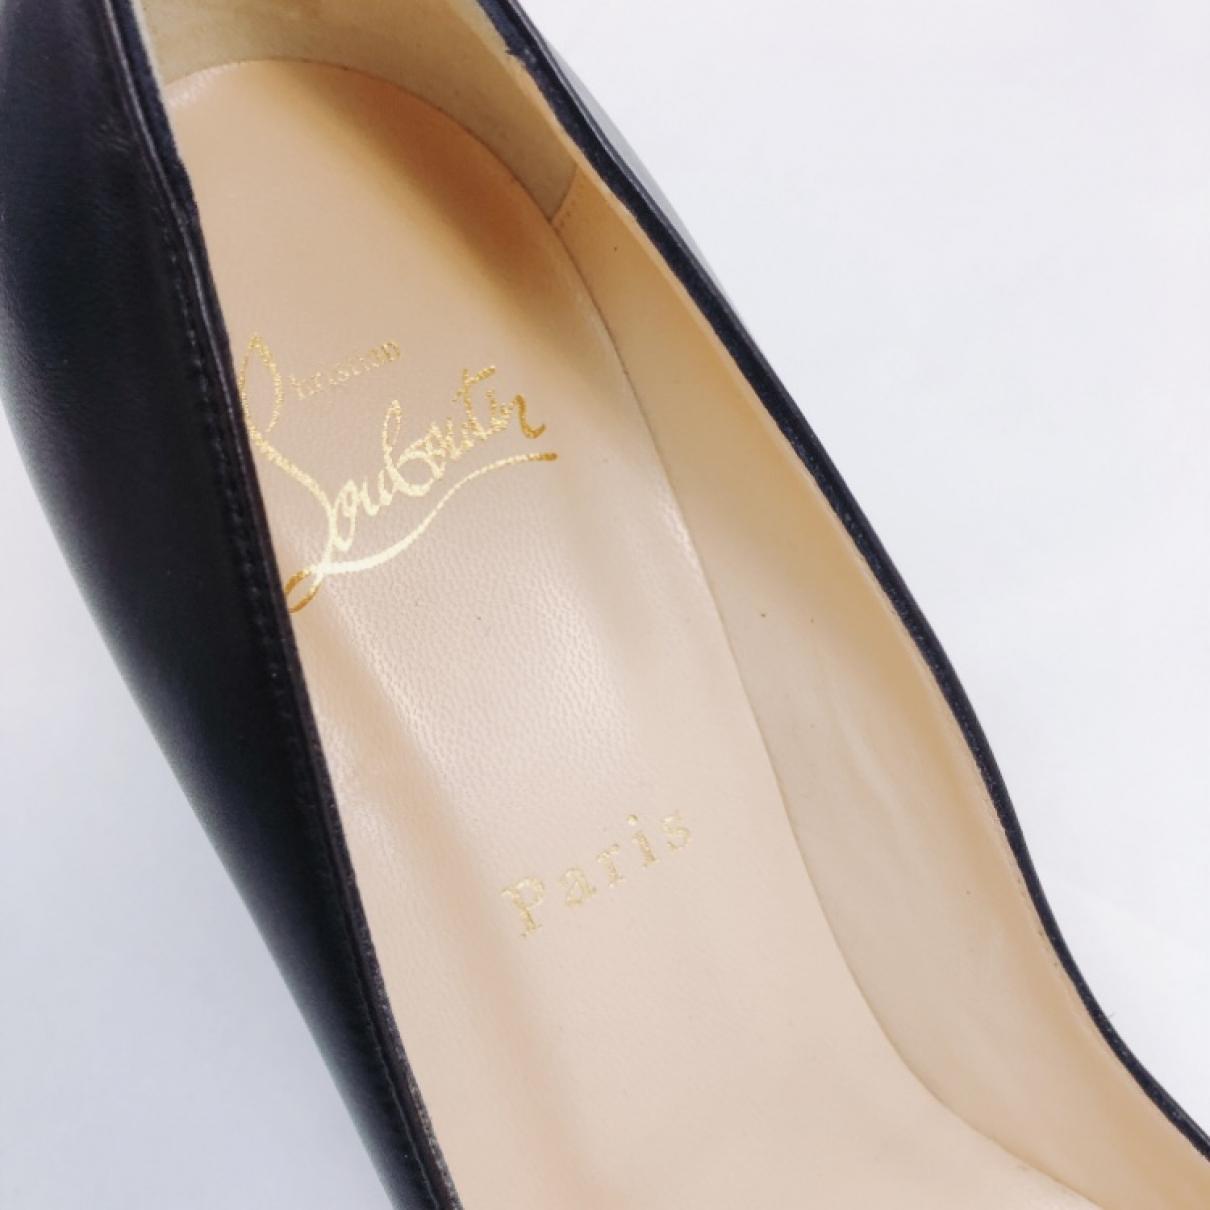 Leather heels - 3